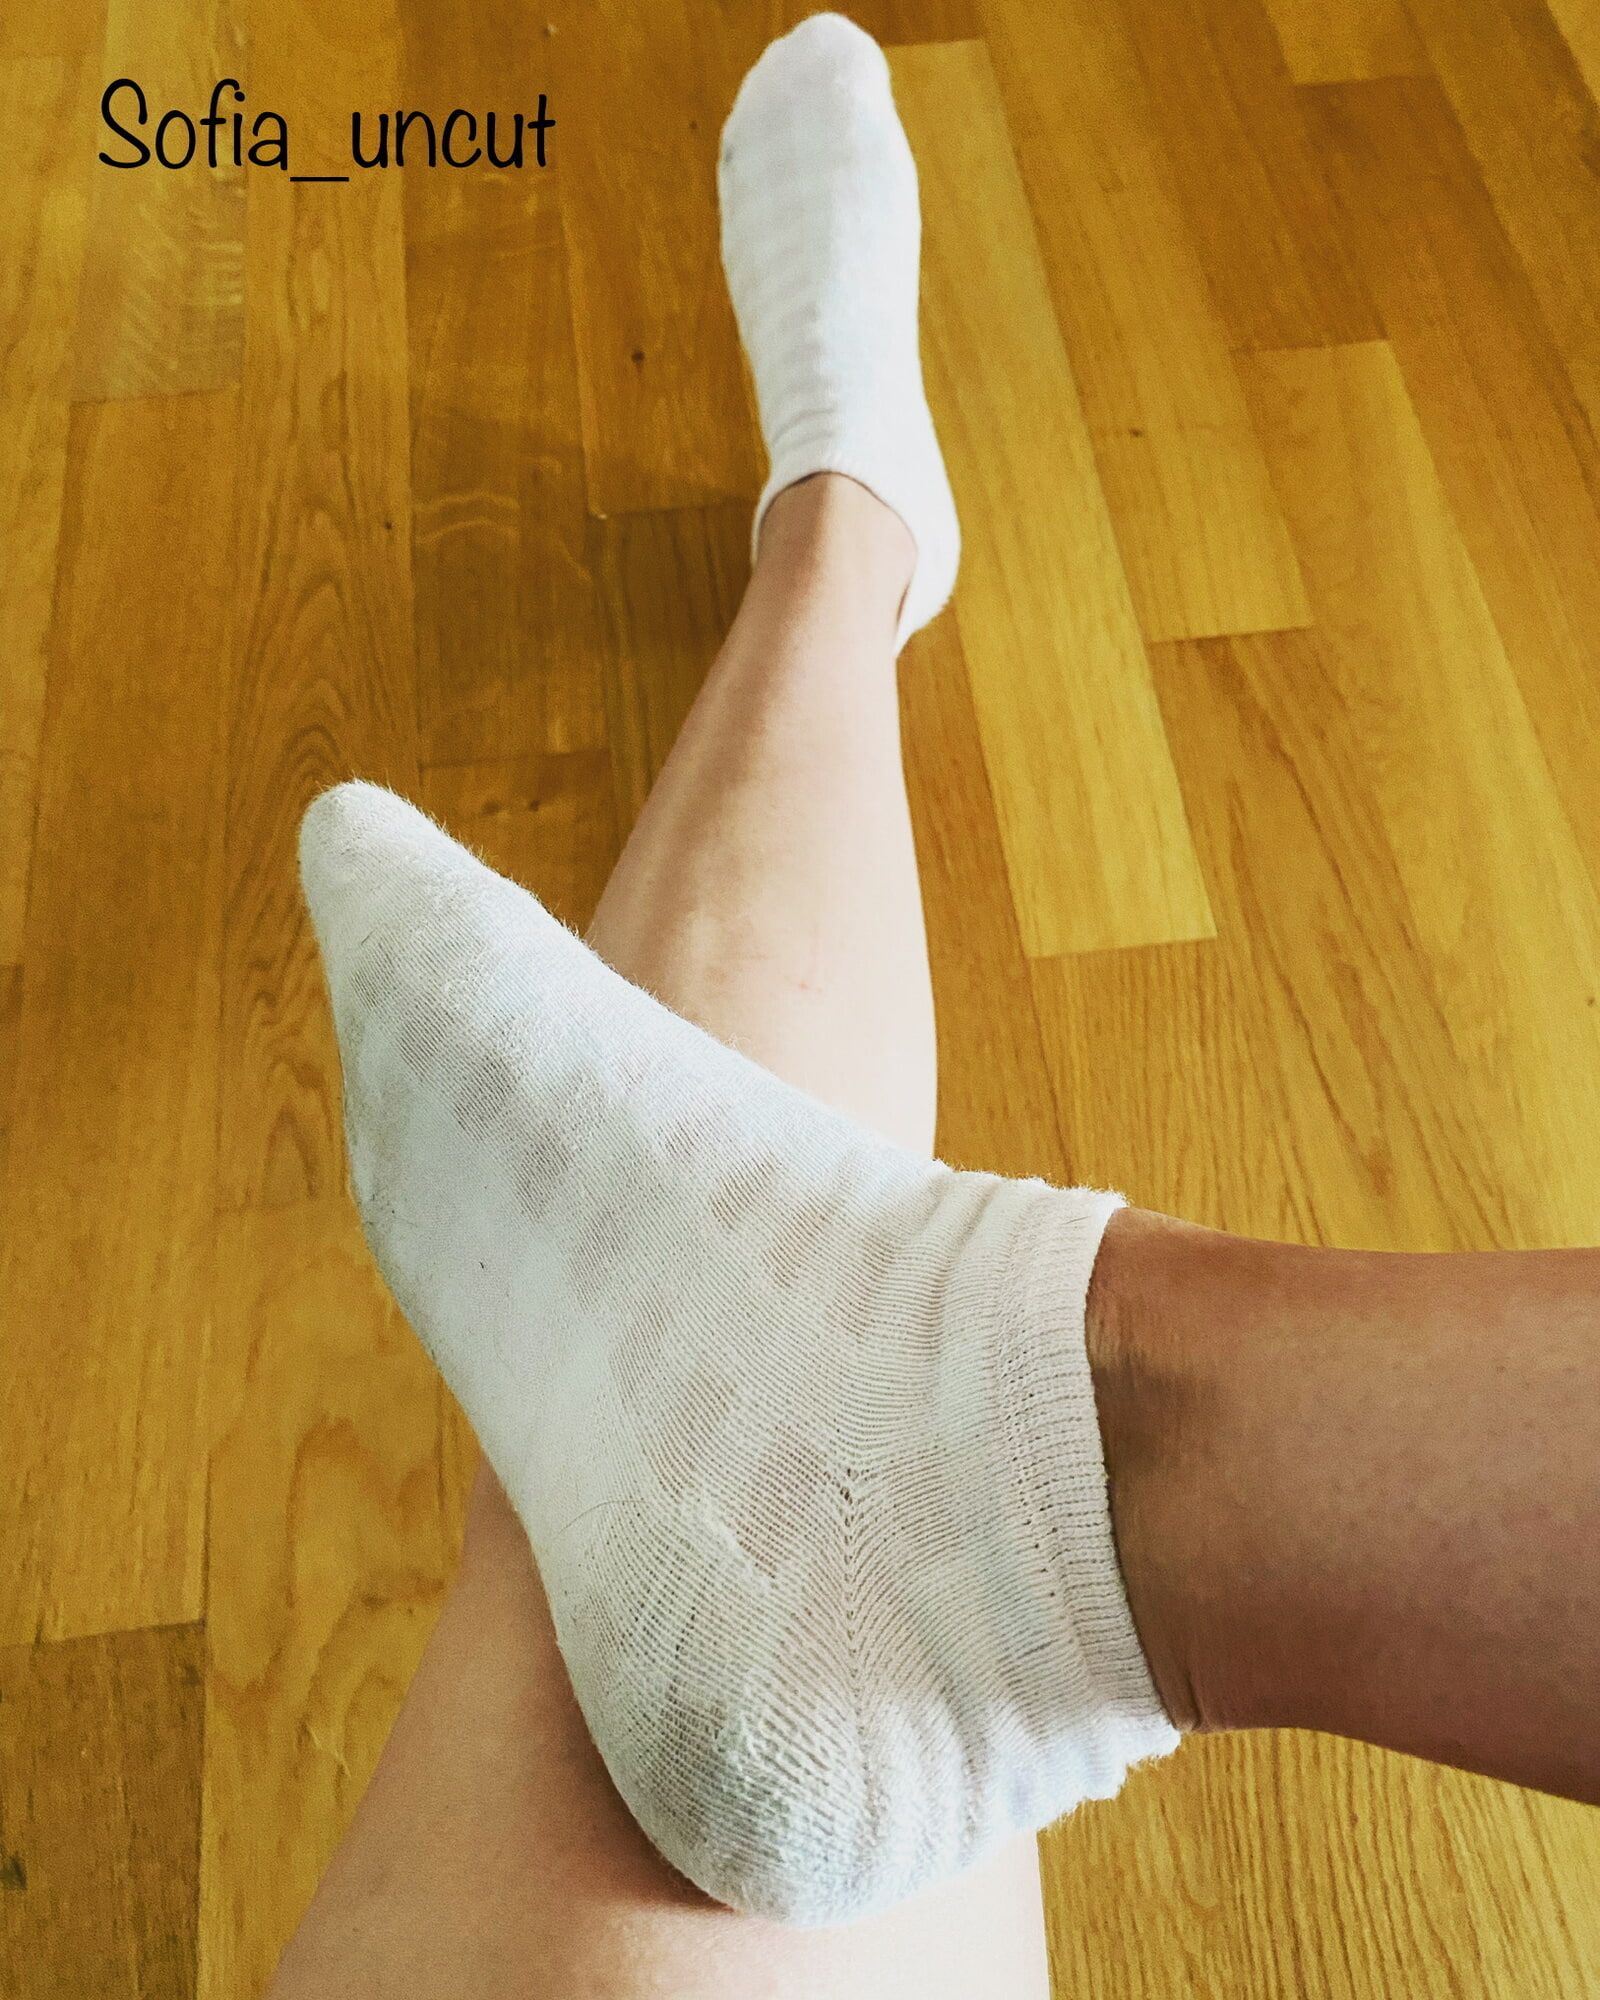 Socks & Shoes & Leggings #8